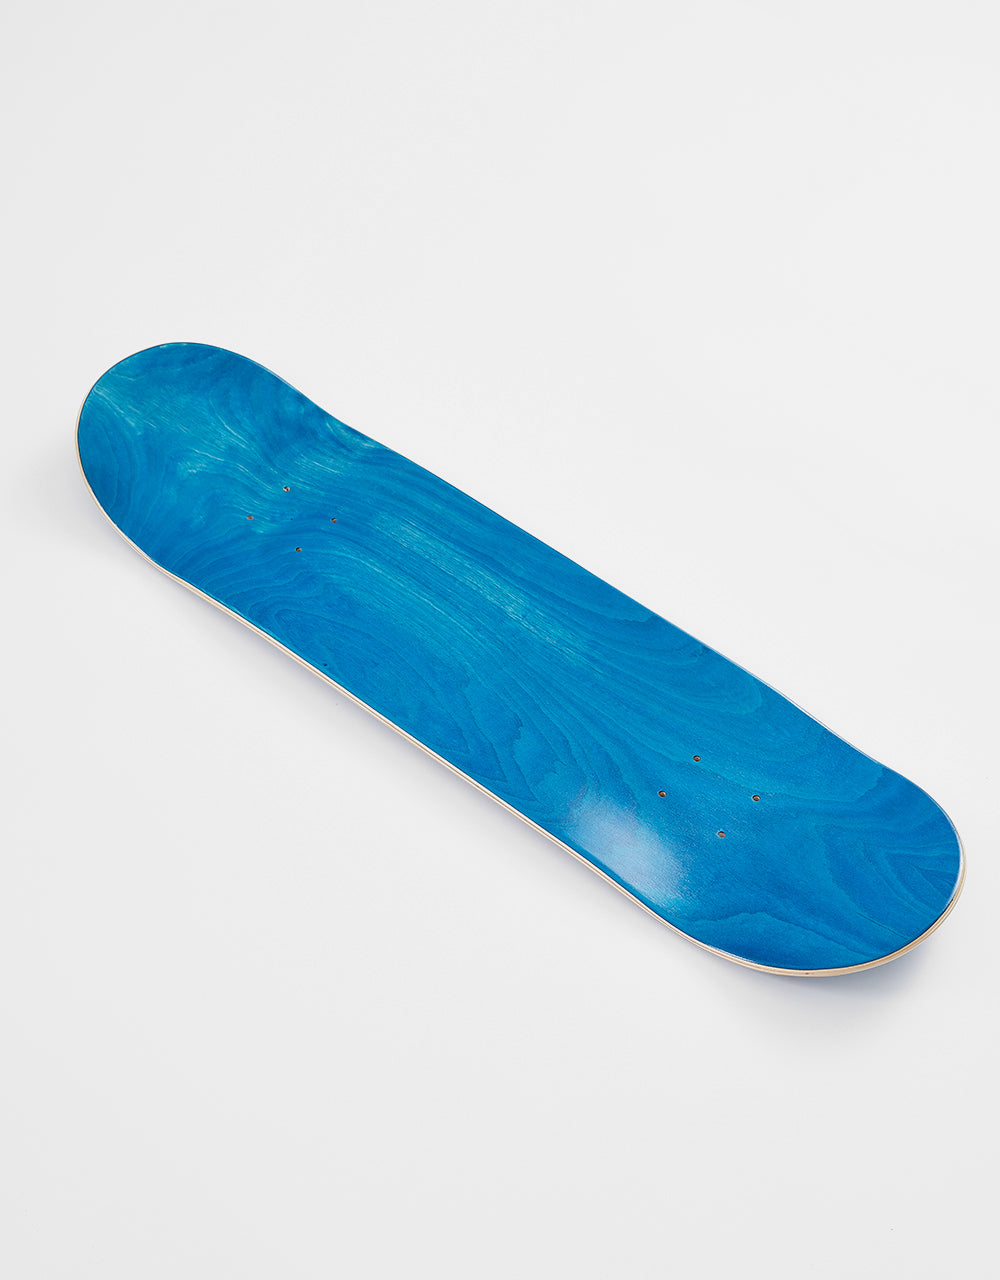 Blueprint Home Heart Black/Blue Skateboard Deck - 8.25"